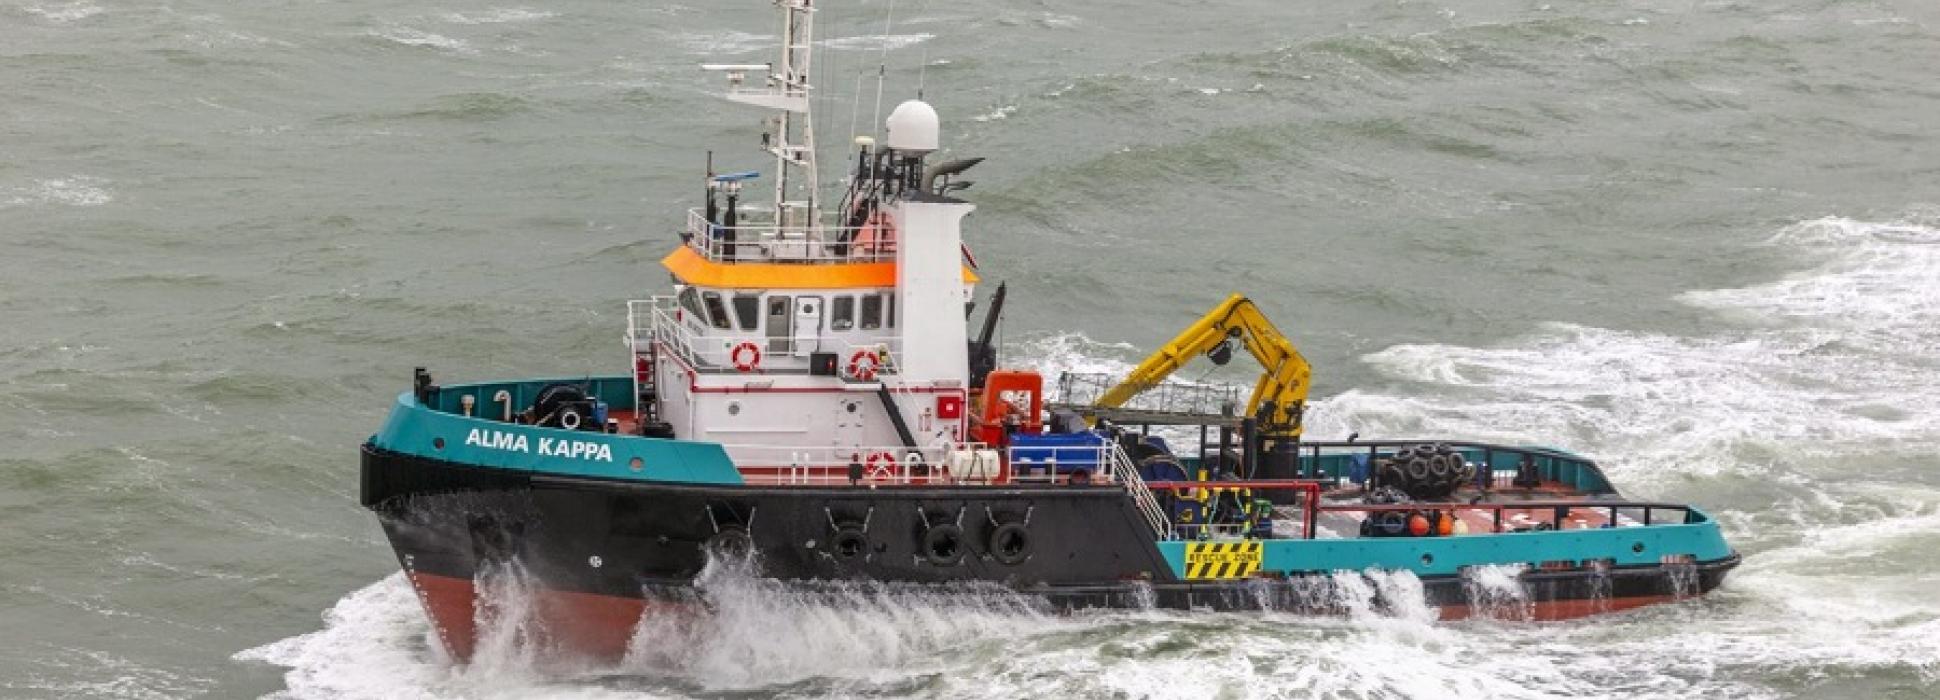 En Saint-Nazaire, Alka Marine invierte dos millones de euros en la botadura de un barco